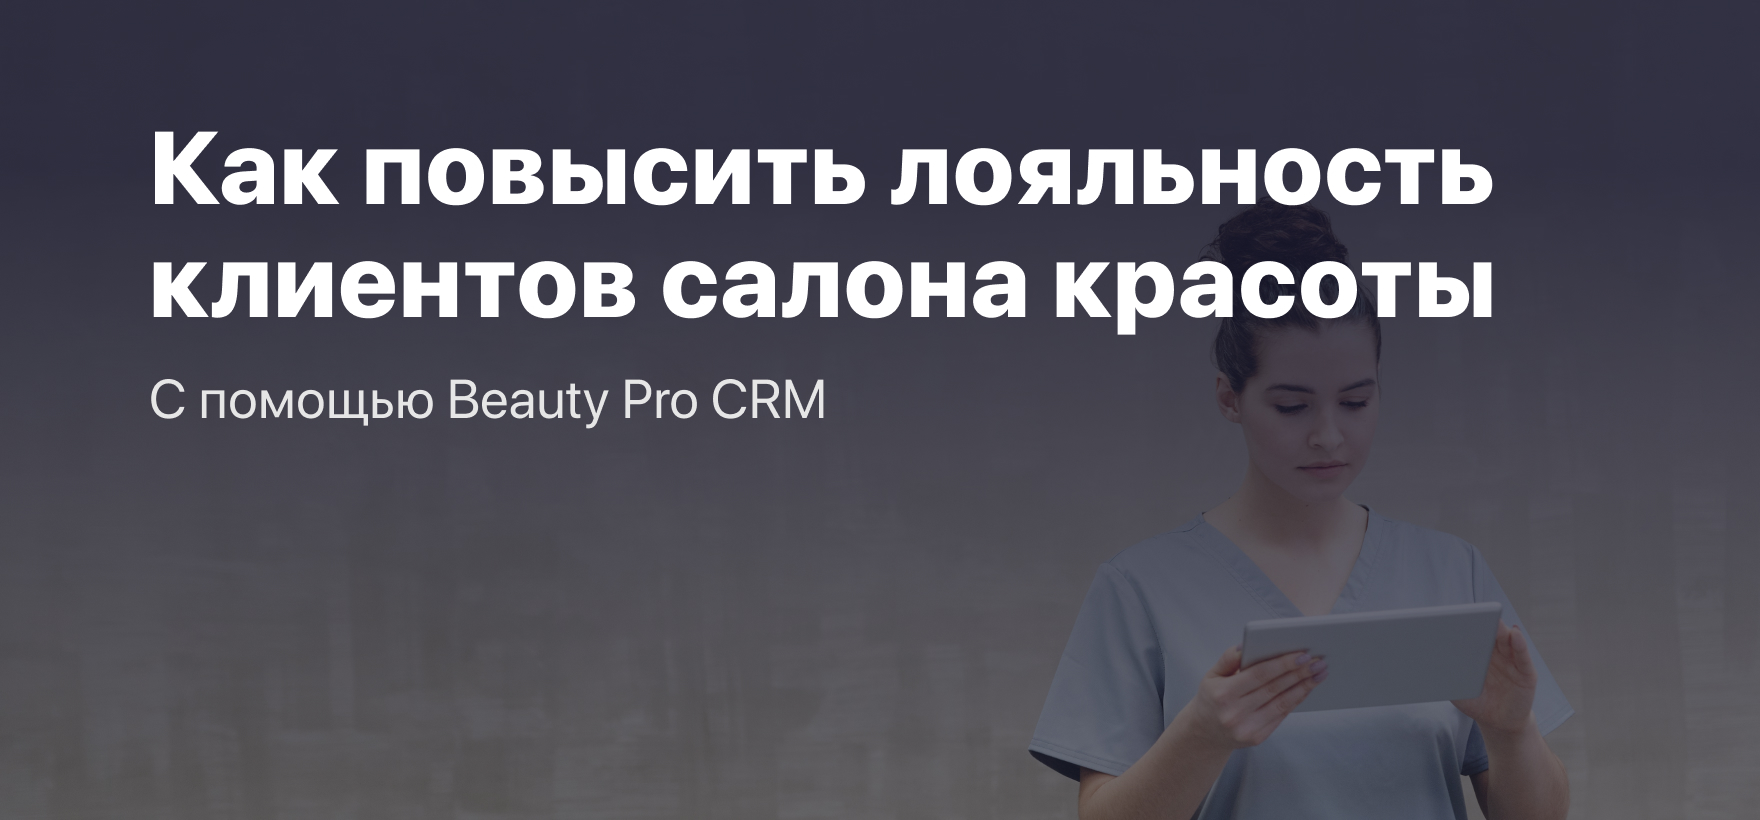 Как повысить лояльность клиентов салона красоты с помощью Beauty Pro CRM?